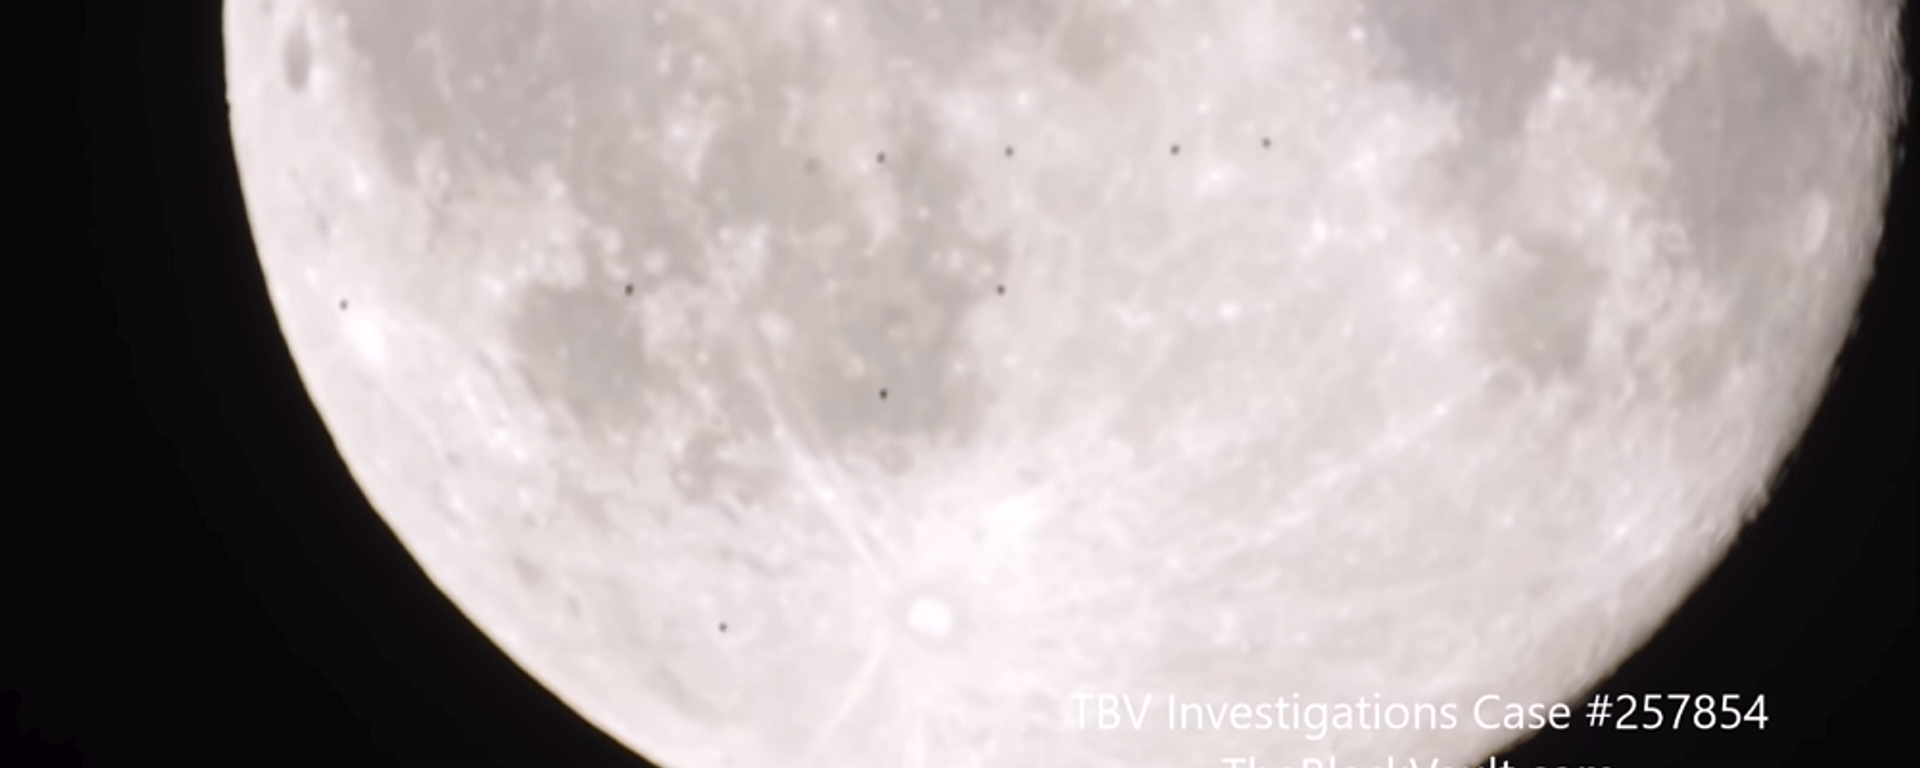 მოყვარულმა ასტრონომმა მთვარის ფონზე ამოუცნობი მფრინავი ობიექტები გადაიღო - ვიდეო - Sputnik საქართველო, 1920, 25.03.2021